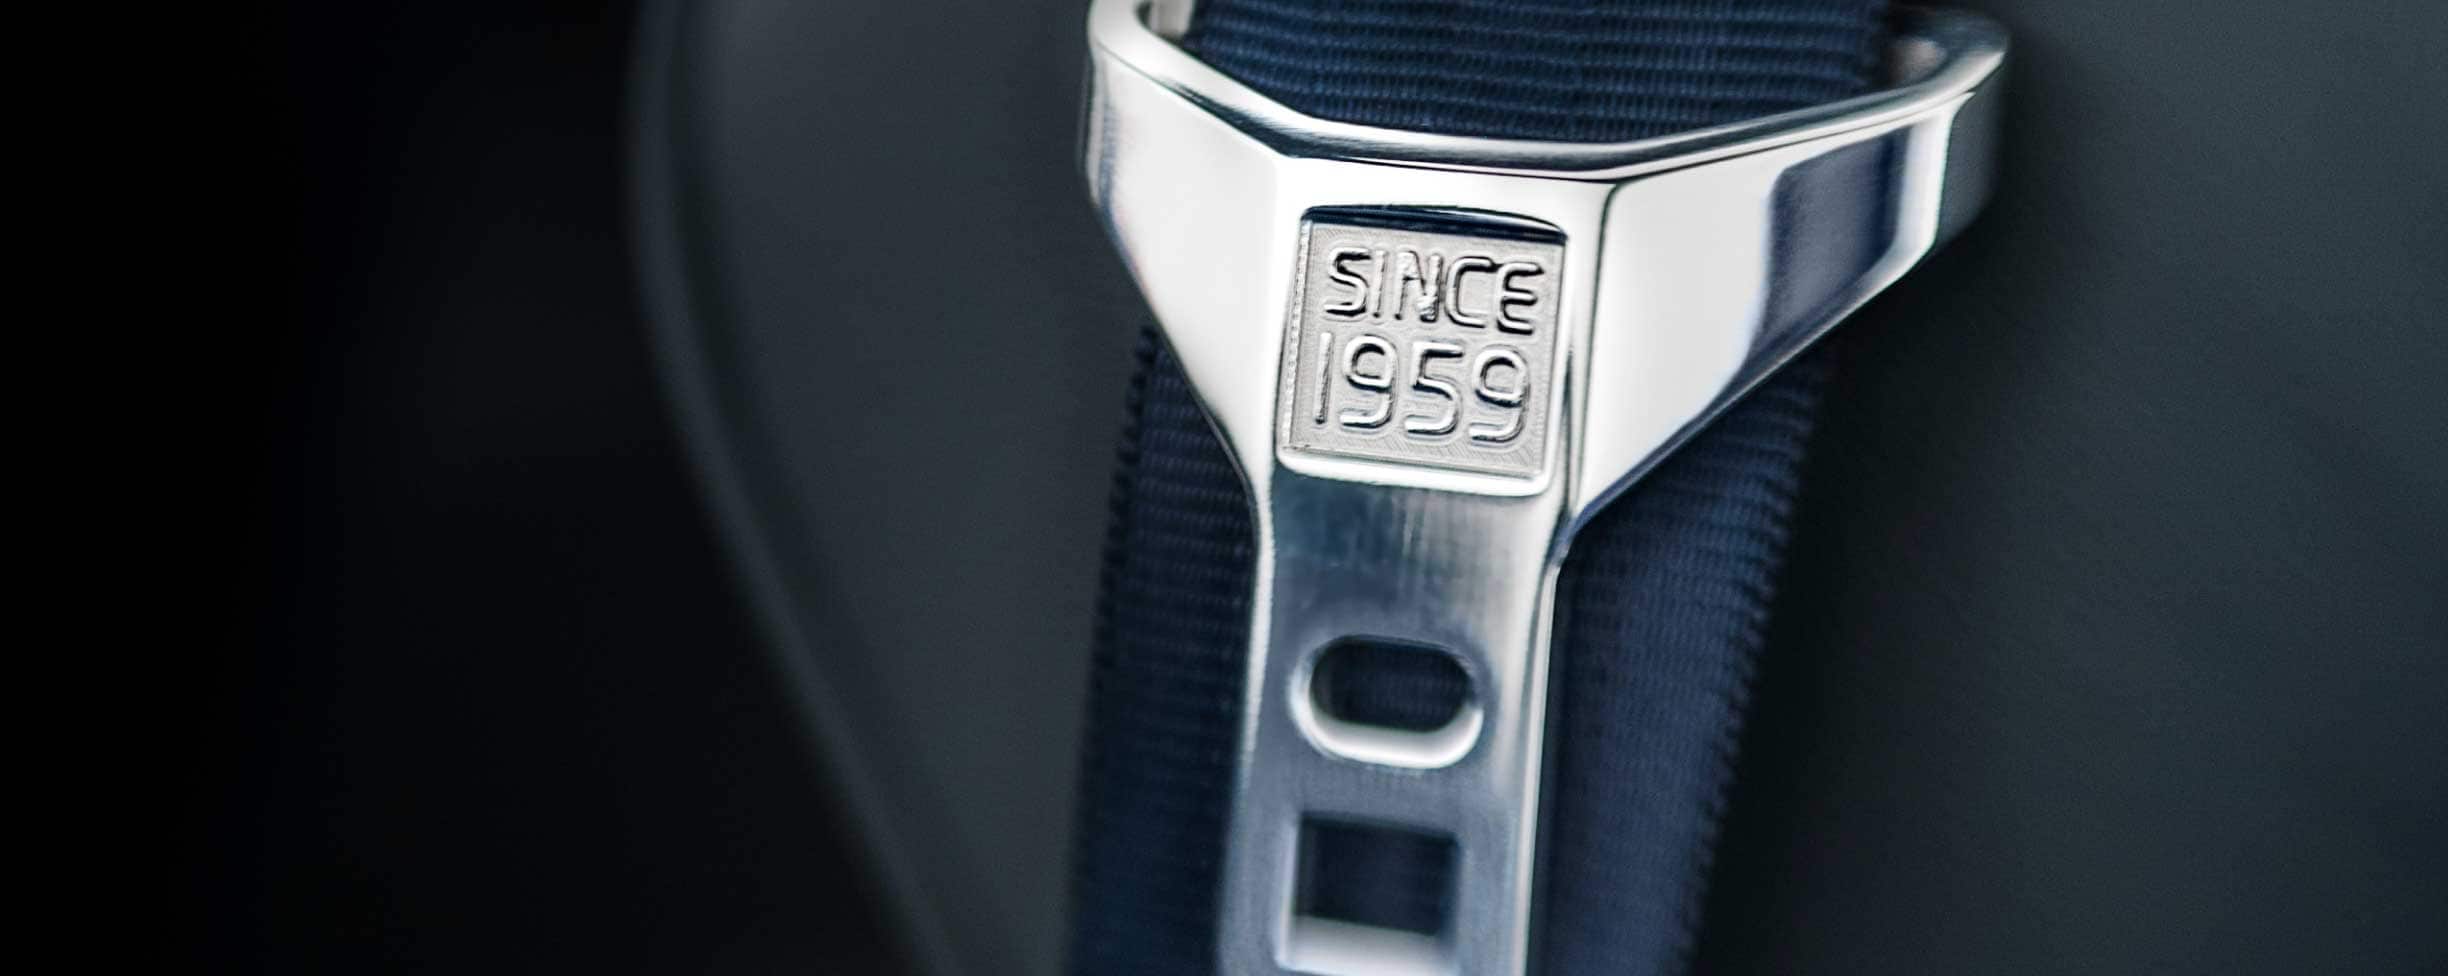 灰色安全带，带扣上刻有“ Since 1959”（源自1959年）字样。